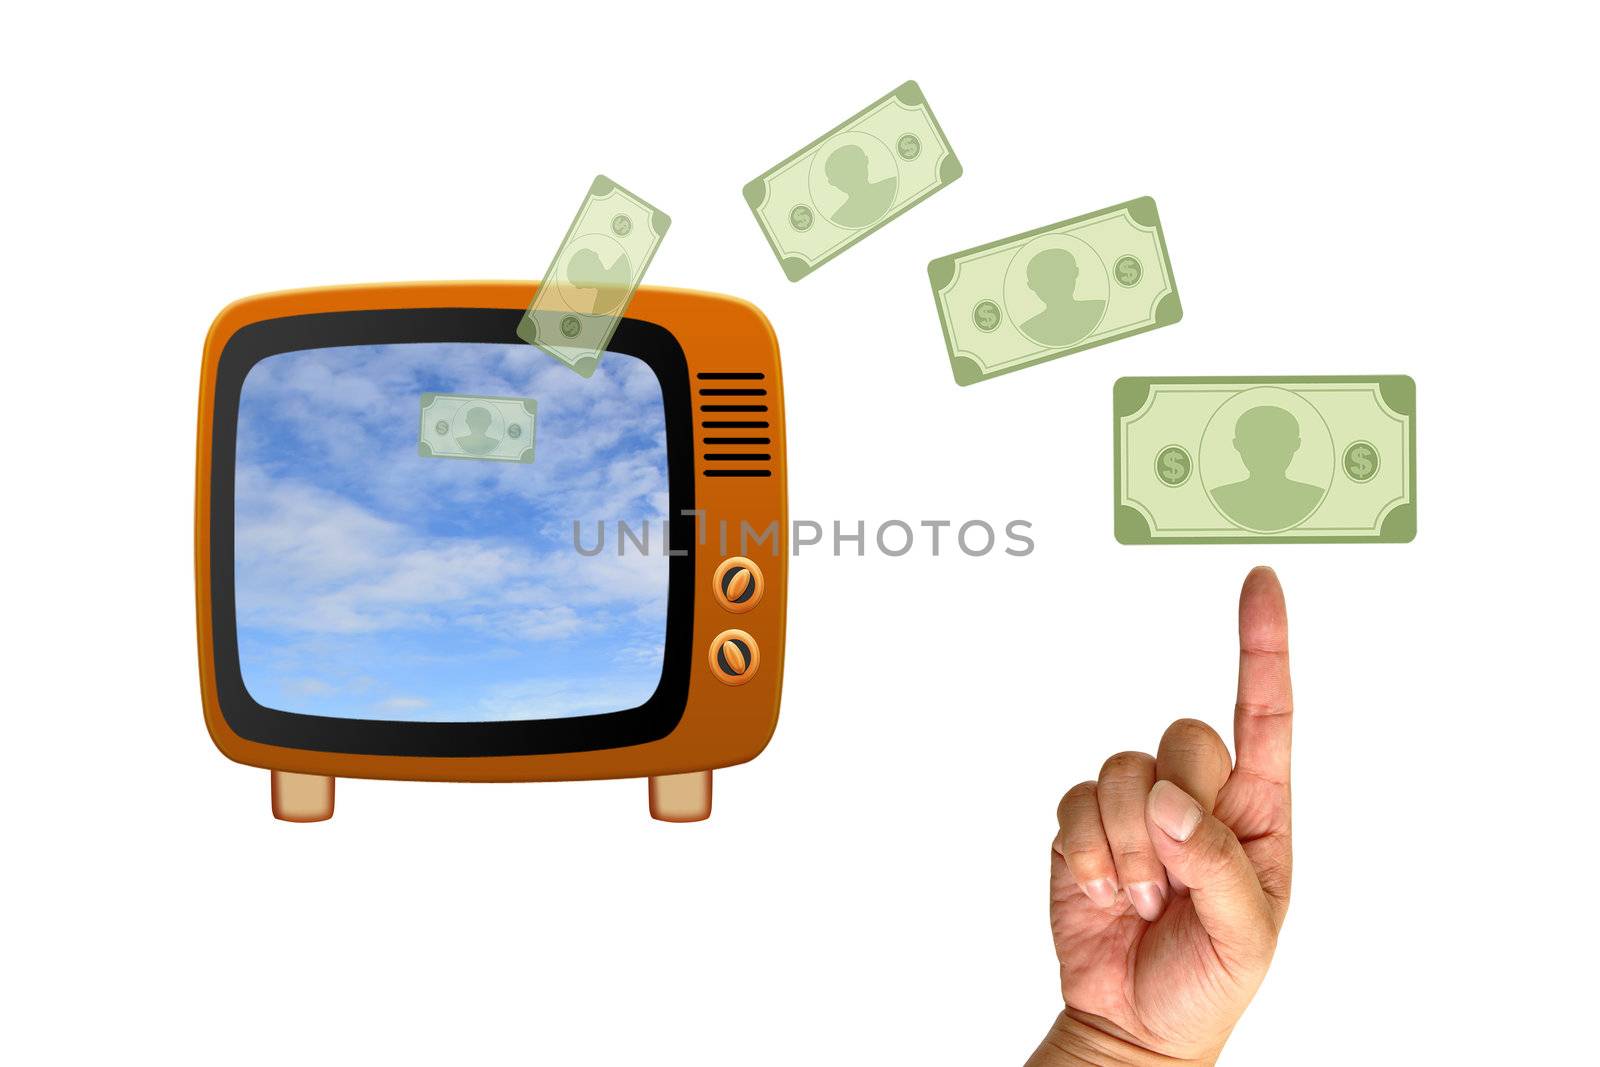 Retro tv with money